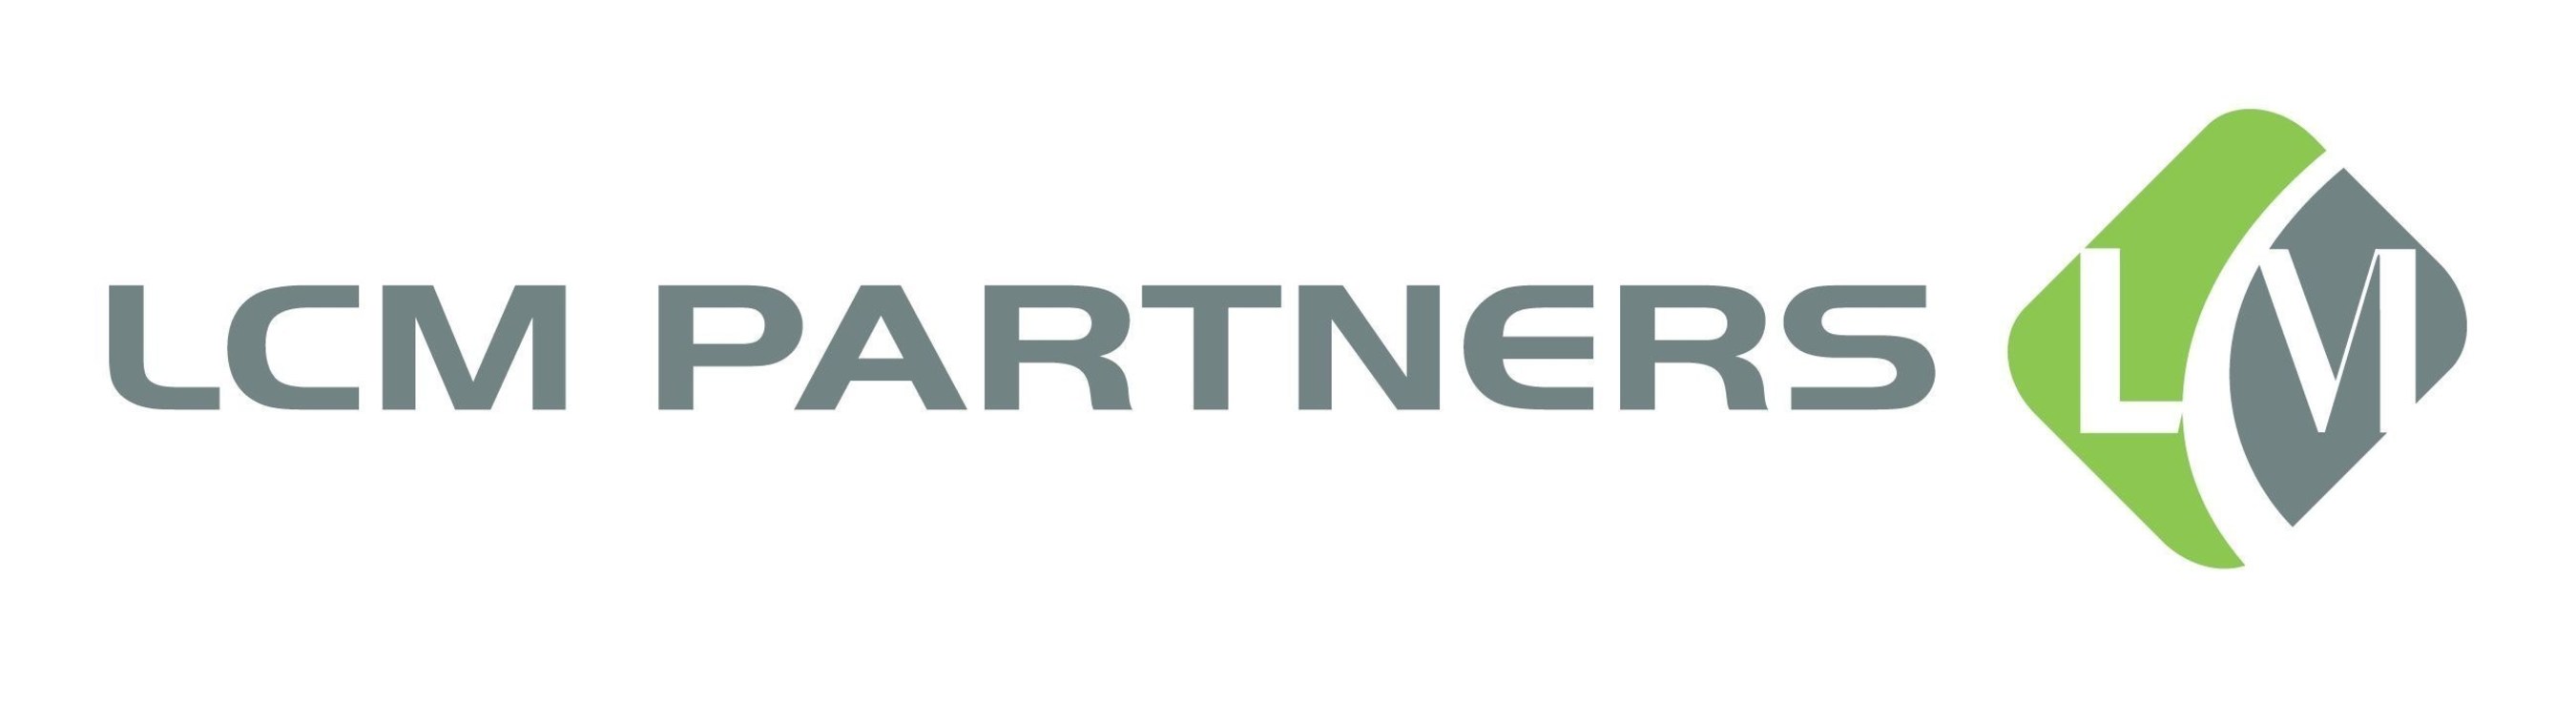 LCM Partners logo (PRNewsFoto/LCM Partners)